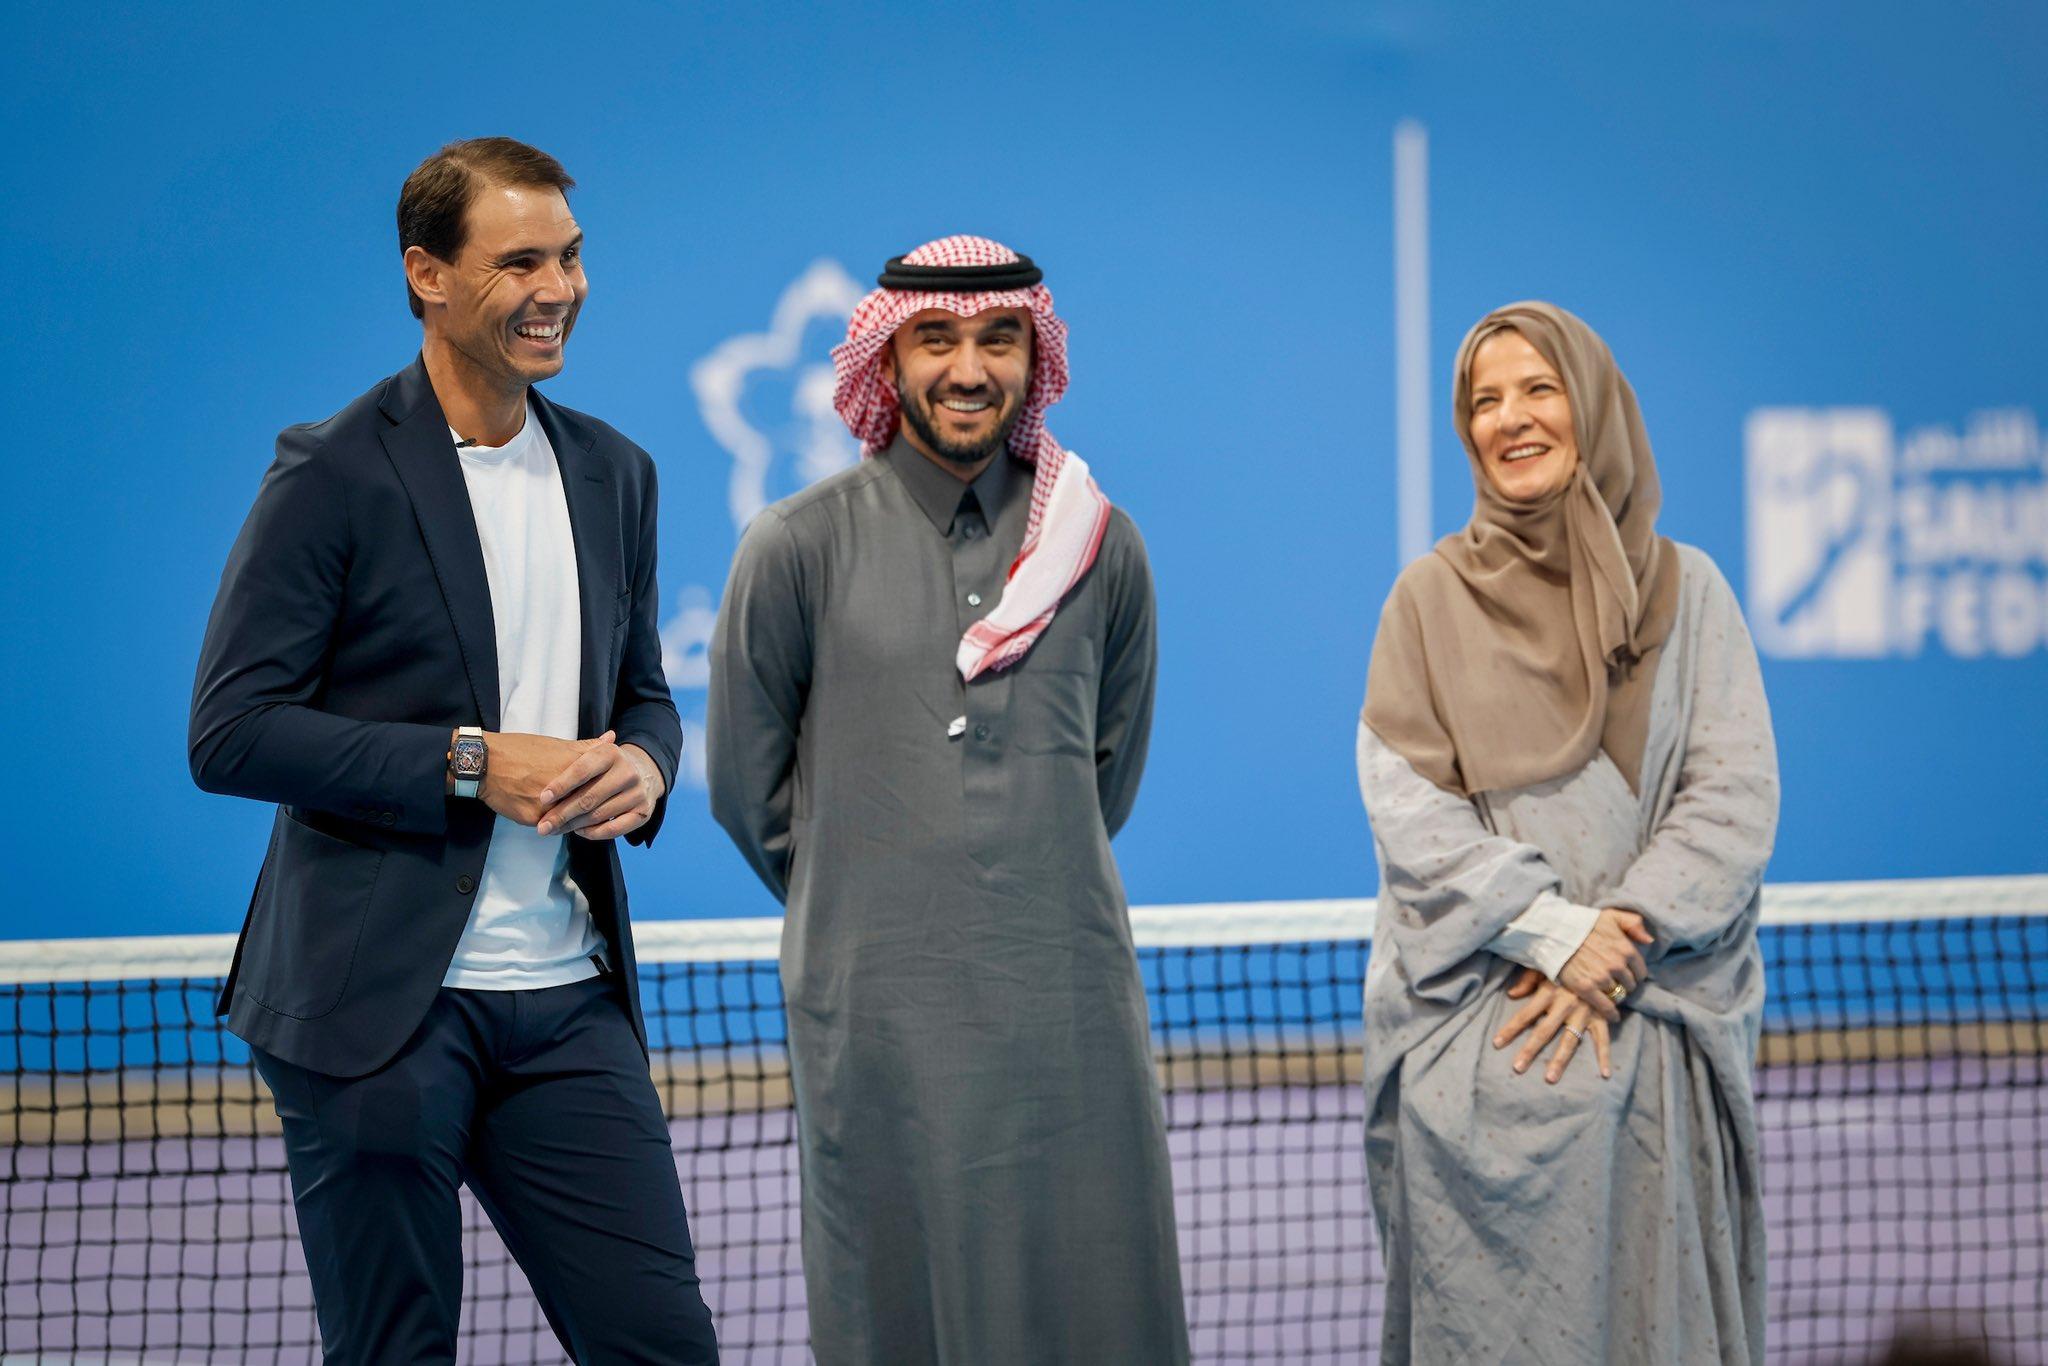 Spanish tennis star Rafael Nadal named as Saudi Tennis ambassador 